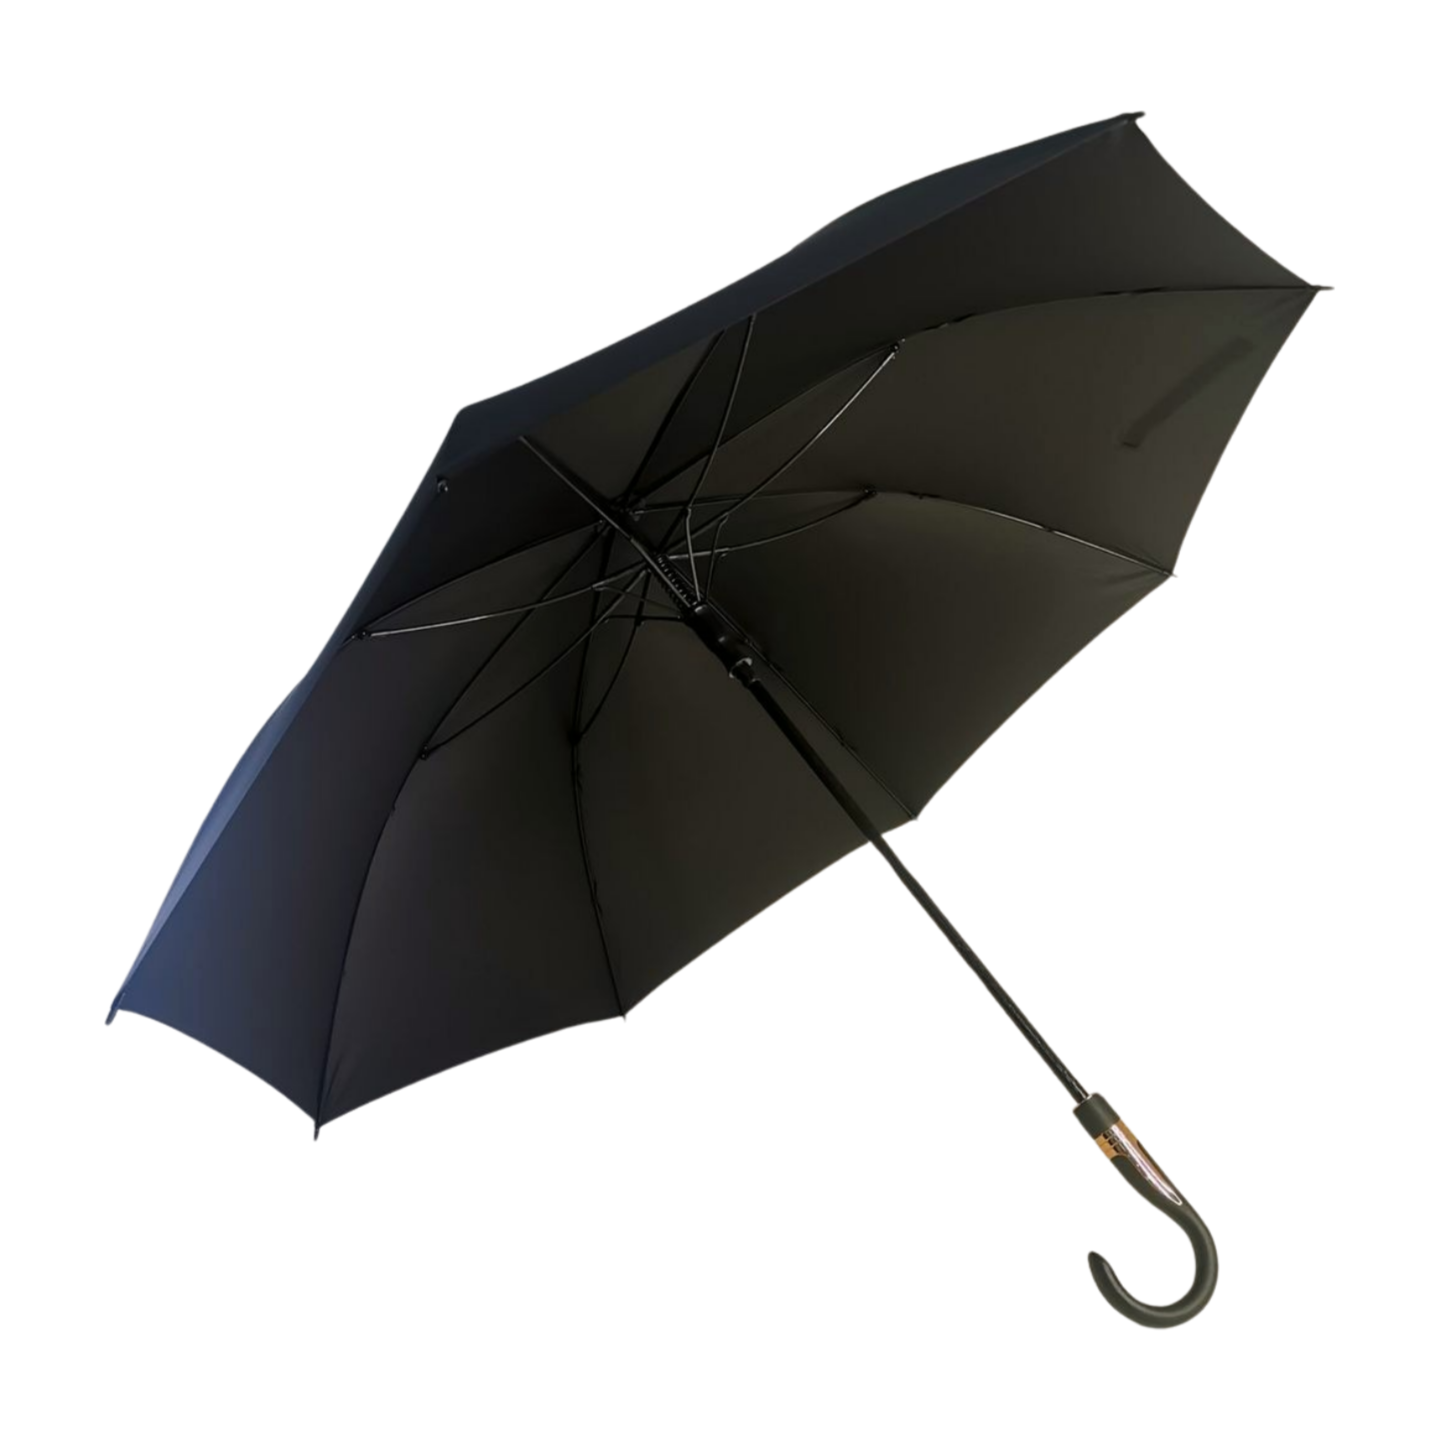 ttps: //k913.goodao.net/60-golf-umbrel… бизнес-стиль-продукт /